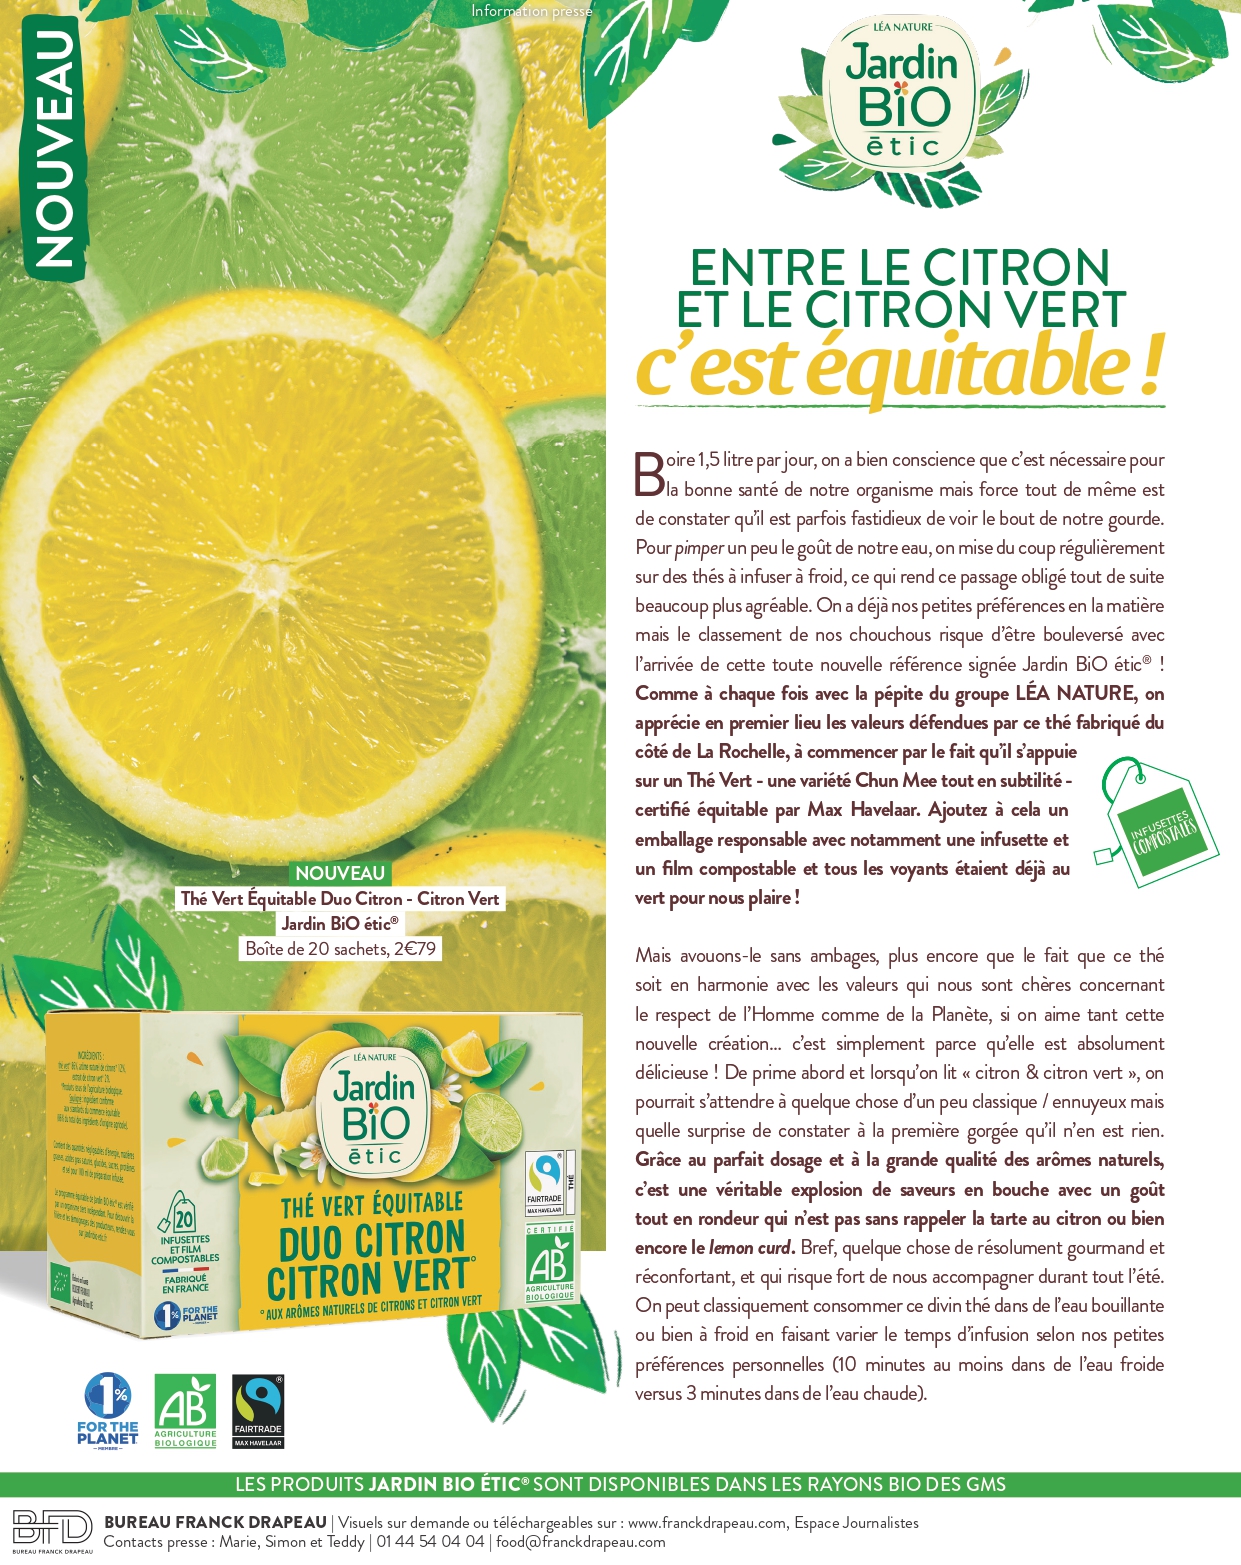 Jardin BiO étic | Duo Citron – Citron Vert